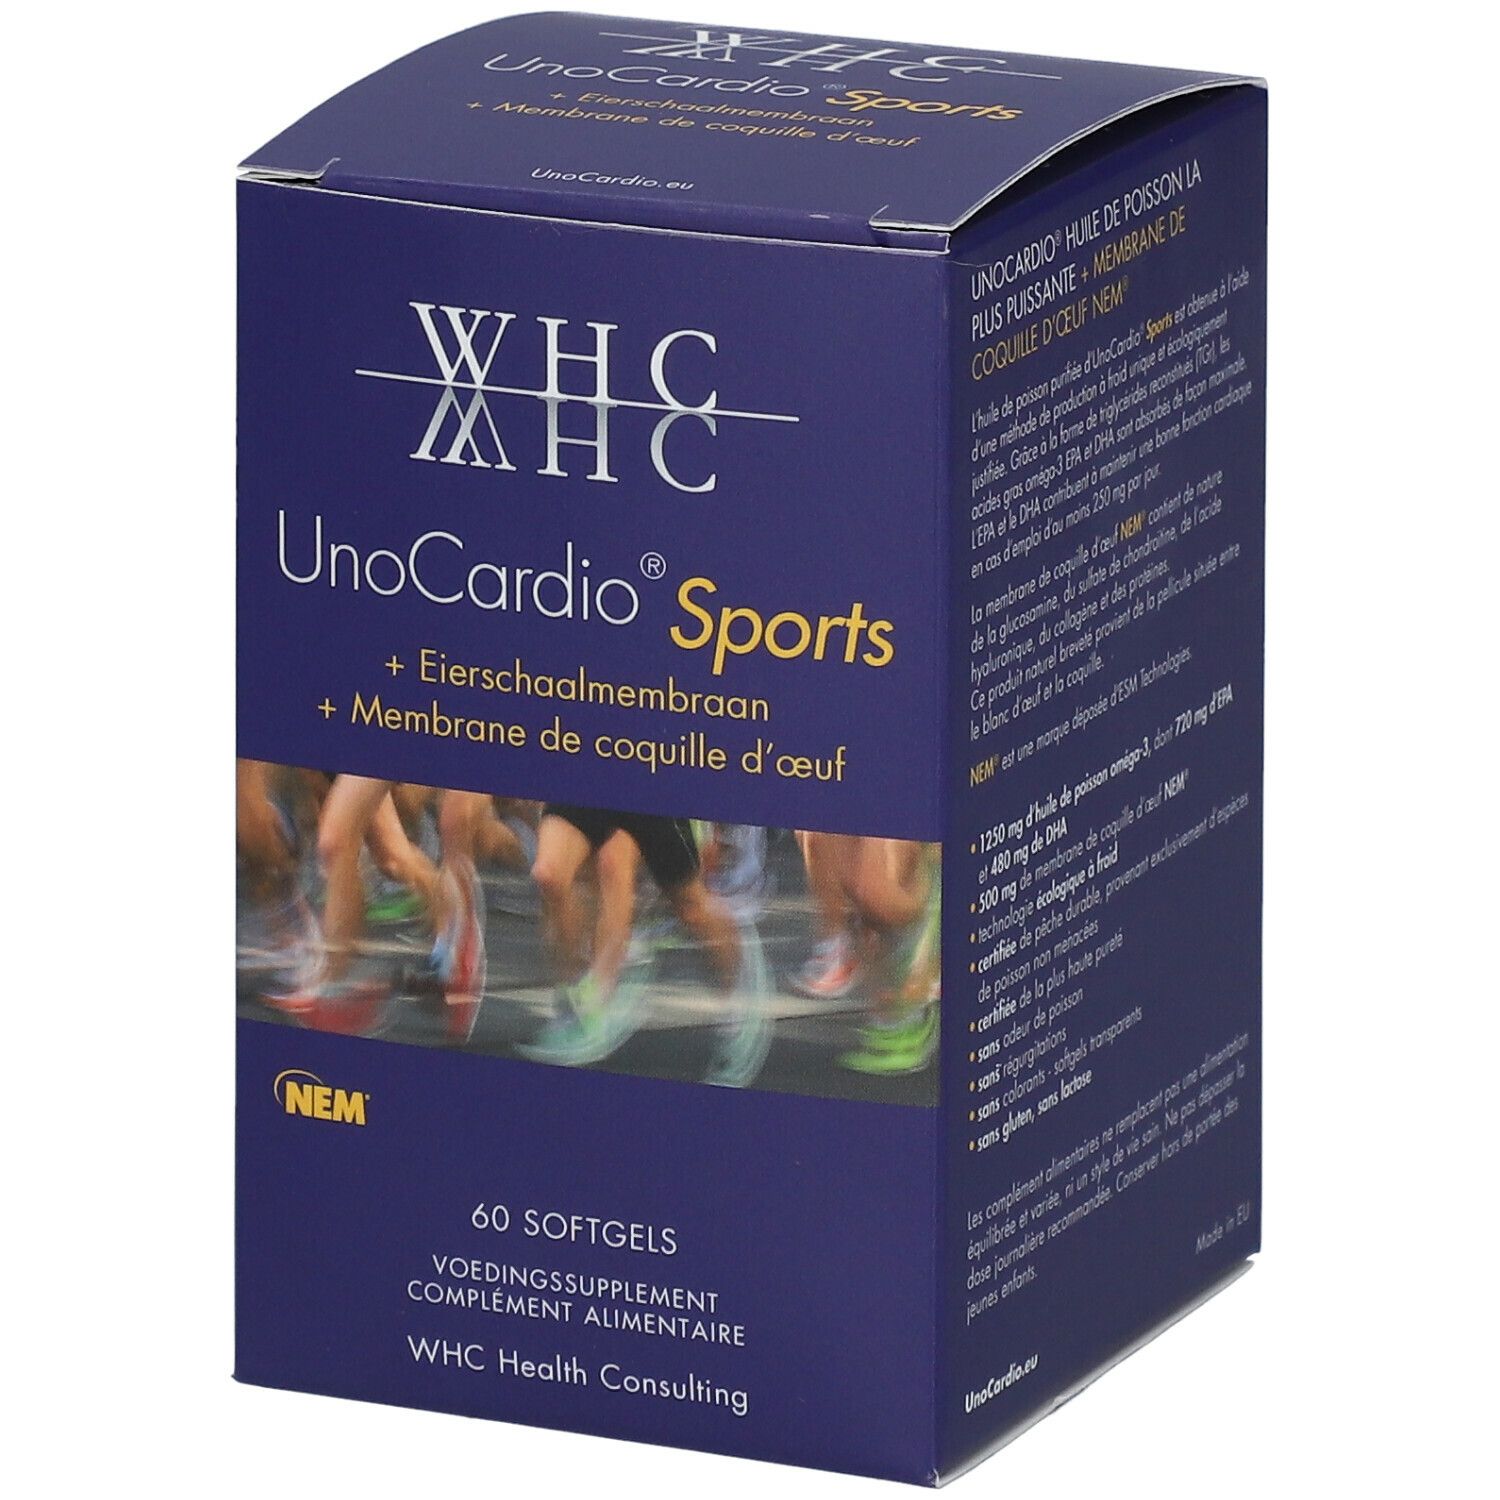 WHC UnoCardio® Sports